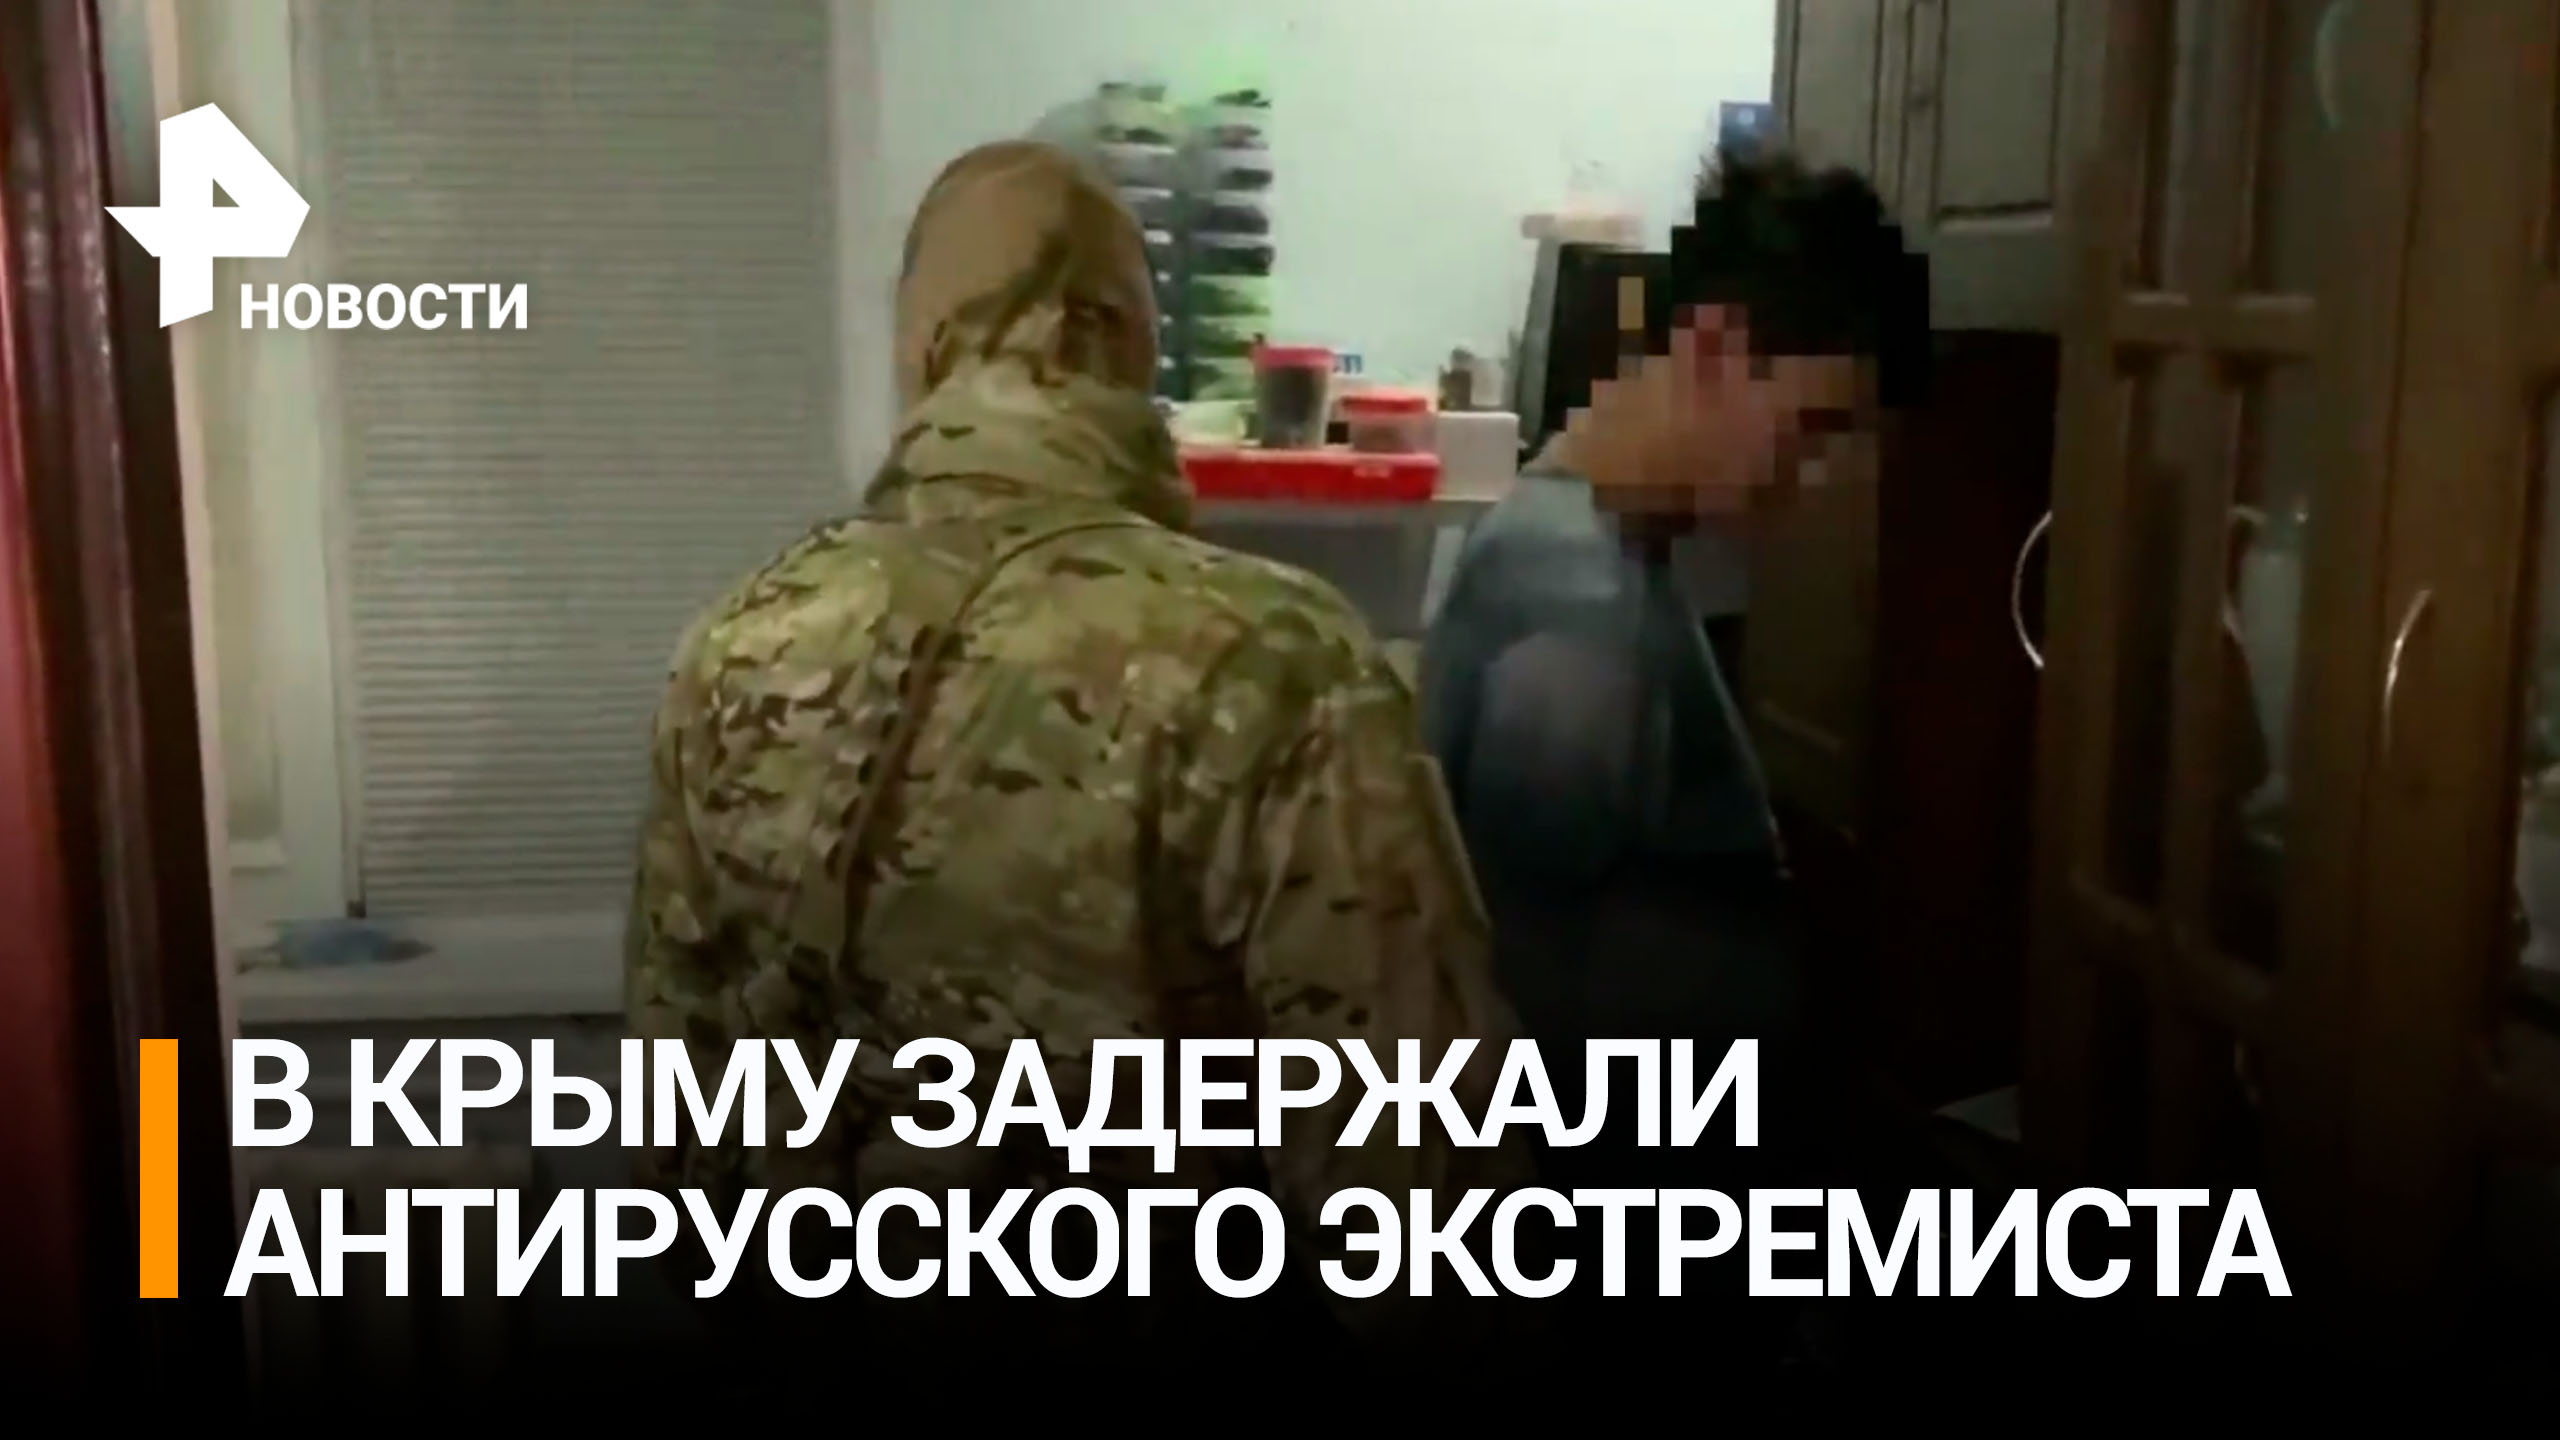 Сотрудники ФСБ задержали мужчину, который публично призывал к экстремистской деятельности в Крыму